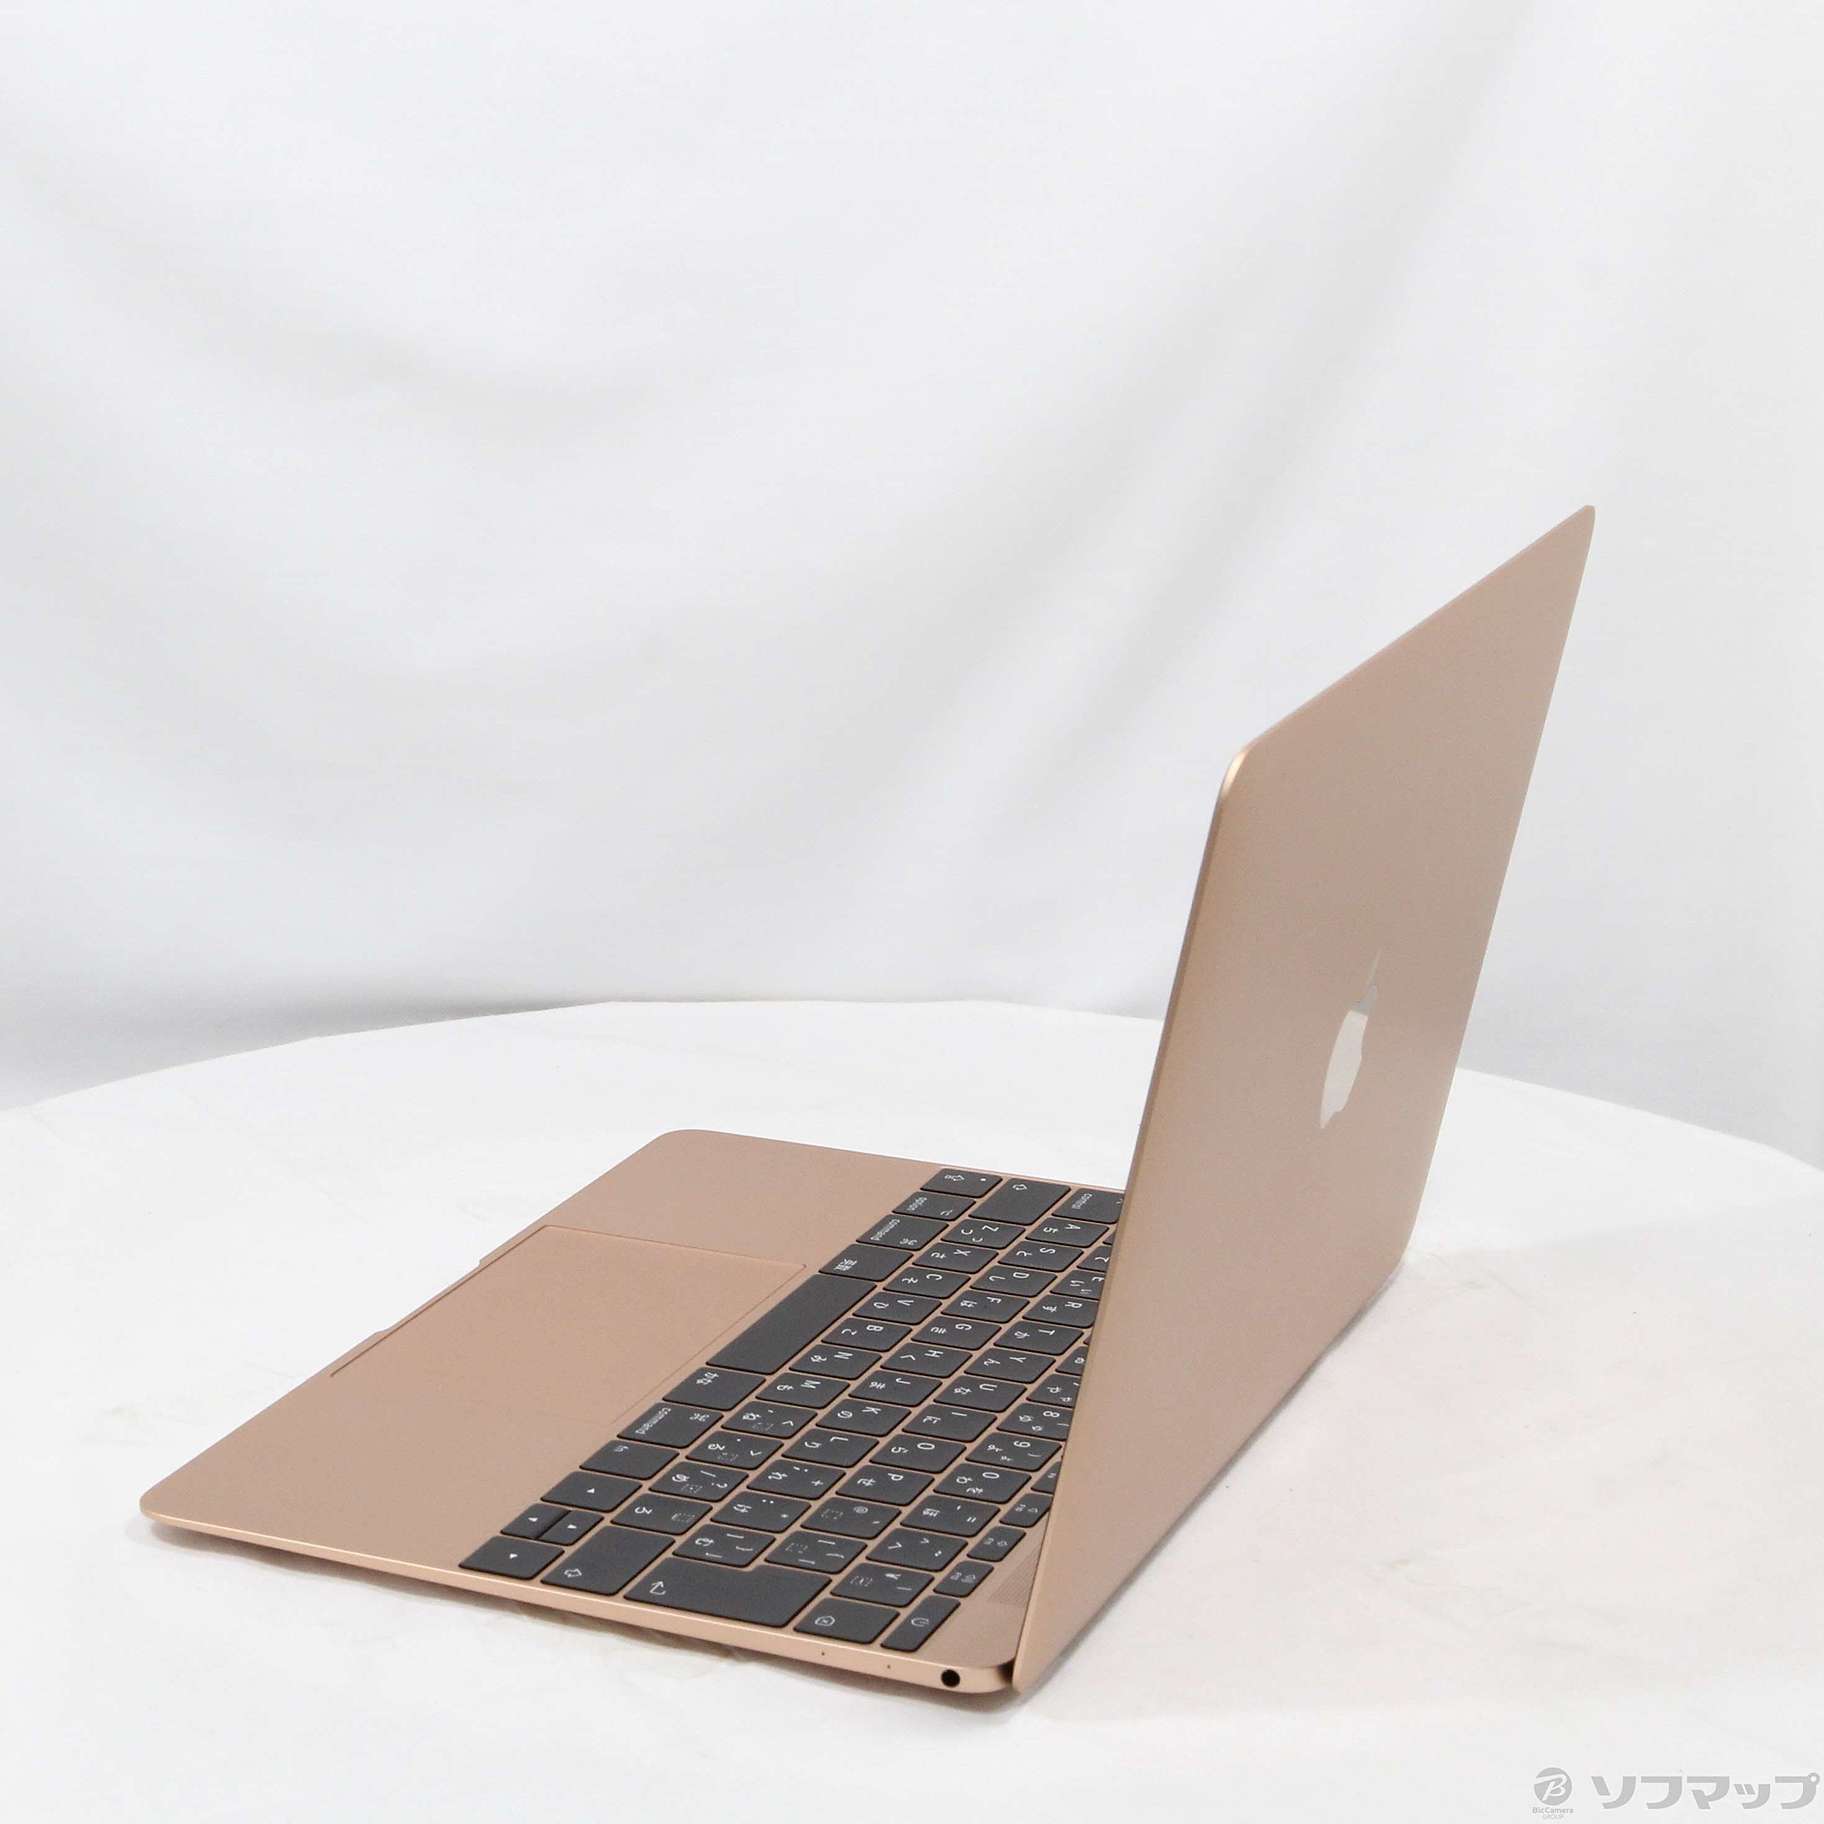 中古品〕 MacBook 12-inch Mid 2017 MRQN2J／A Core_m3 1.2GHz 8GB ...